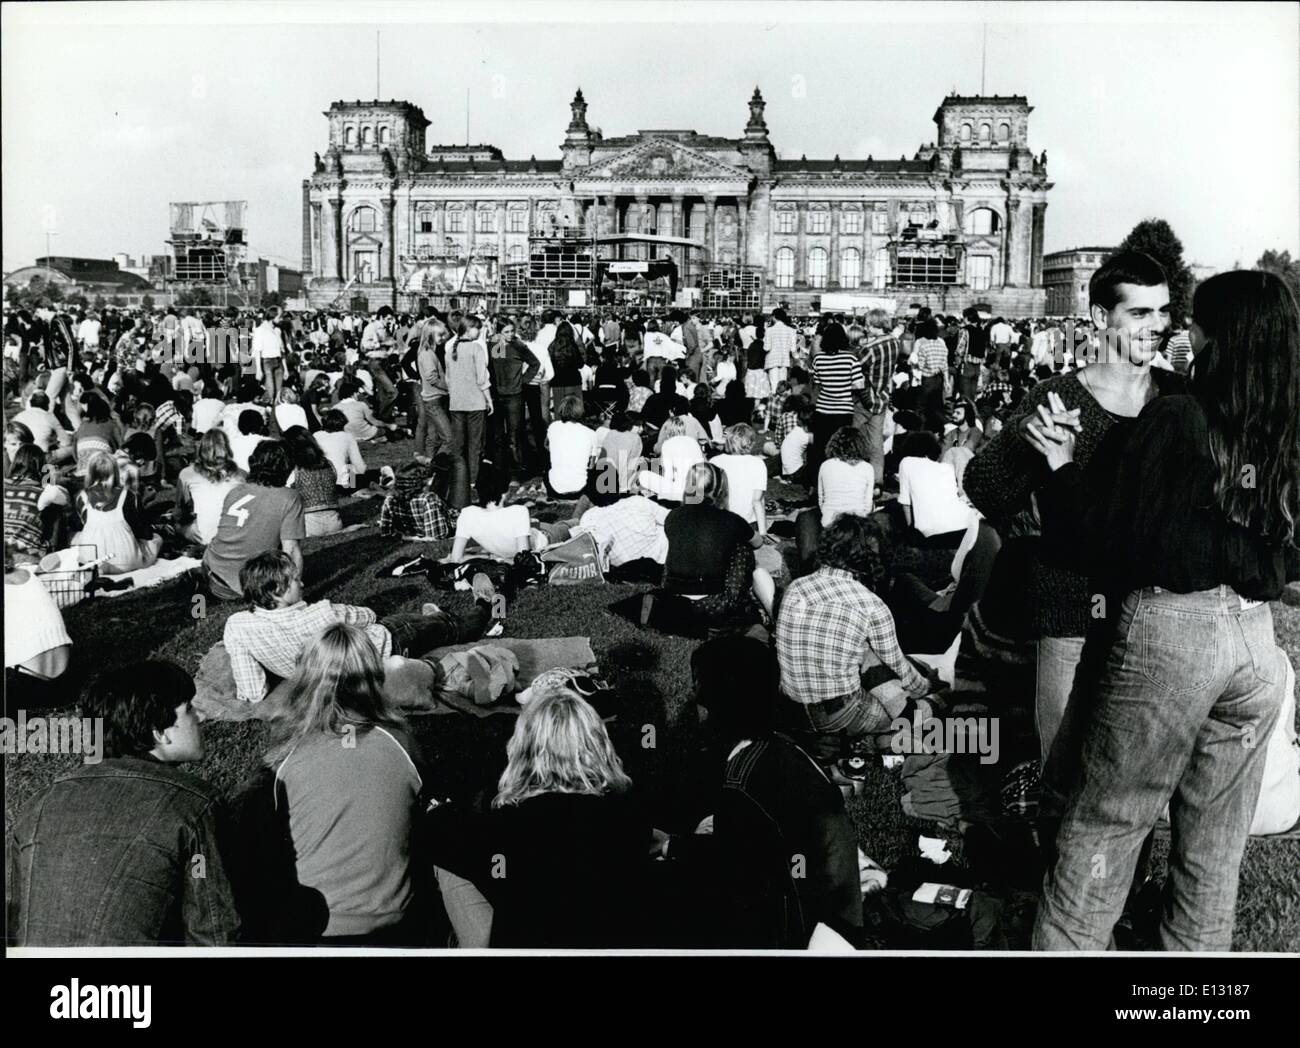 Le 26 février 2012 - Rock-Concert en face du mur de Berlin le plus grand open-air-rock-concert de l'Europe a eu lieu à Berlin - en face de l'Reichstags-Building Berlin (photo) et l'- Mur. Environ 150 000 jeunes ont été apprécié par le célèbre groupe britannique ''Barcley James Harvest'', qui a chanté également ''La liberté pour Berlin''. Environ 500 jeunes de la partie Est de Berlin a essayé d'écouter la musique venant de l'Ouest, mais ont été arrêtés et mis à l'écart du mur par des membres de la police populaire DDR. Banque D'Images